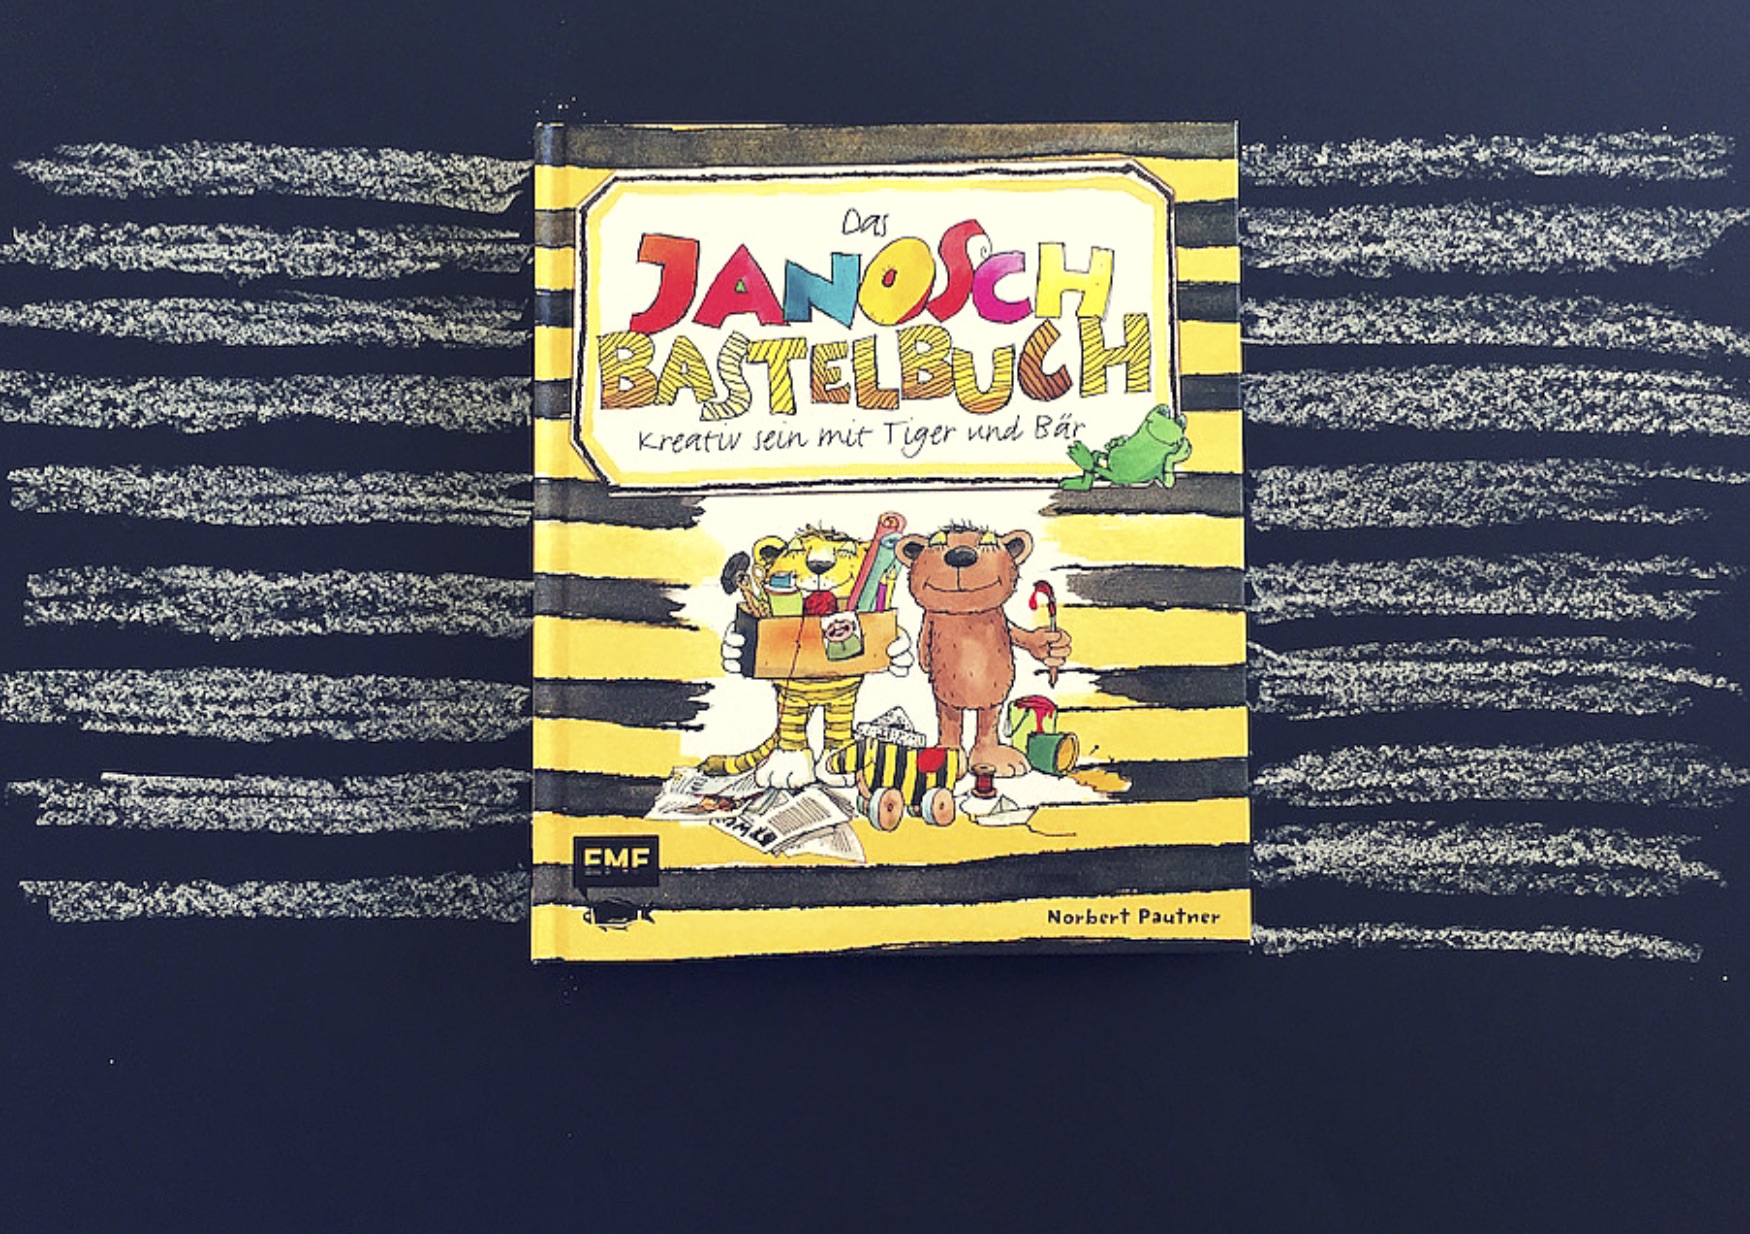 Das Janosch Bastelbuch Verlag EMF www.meinesvenja.de